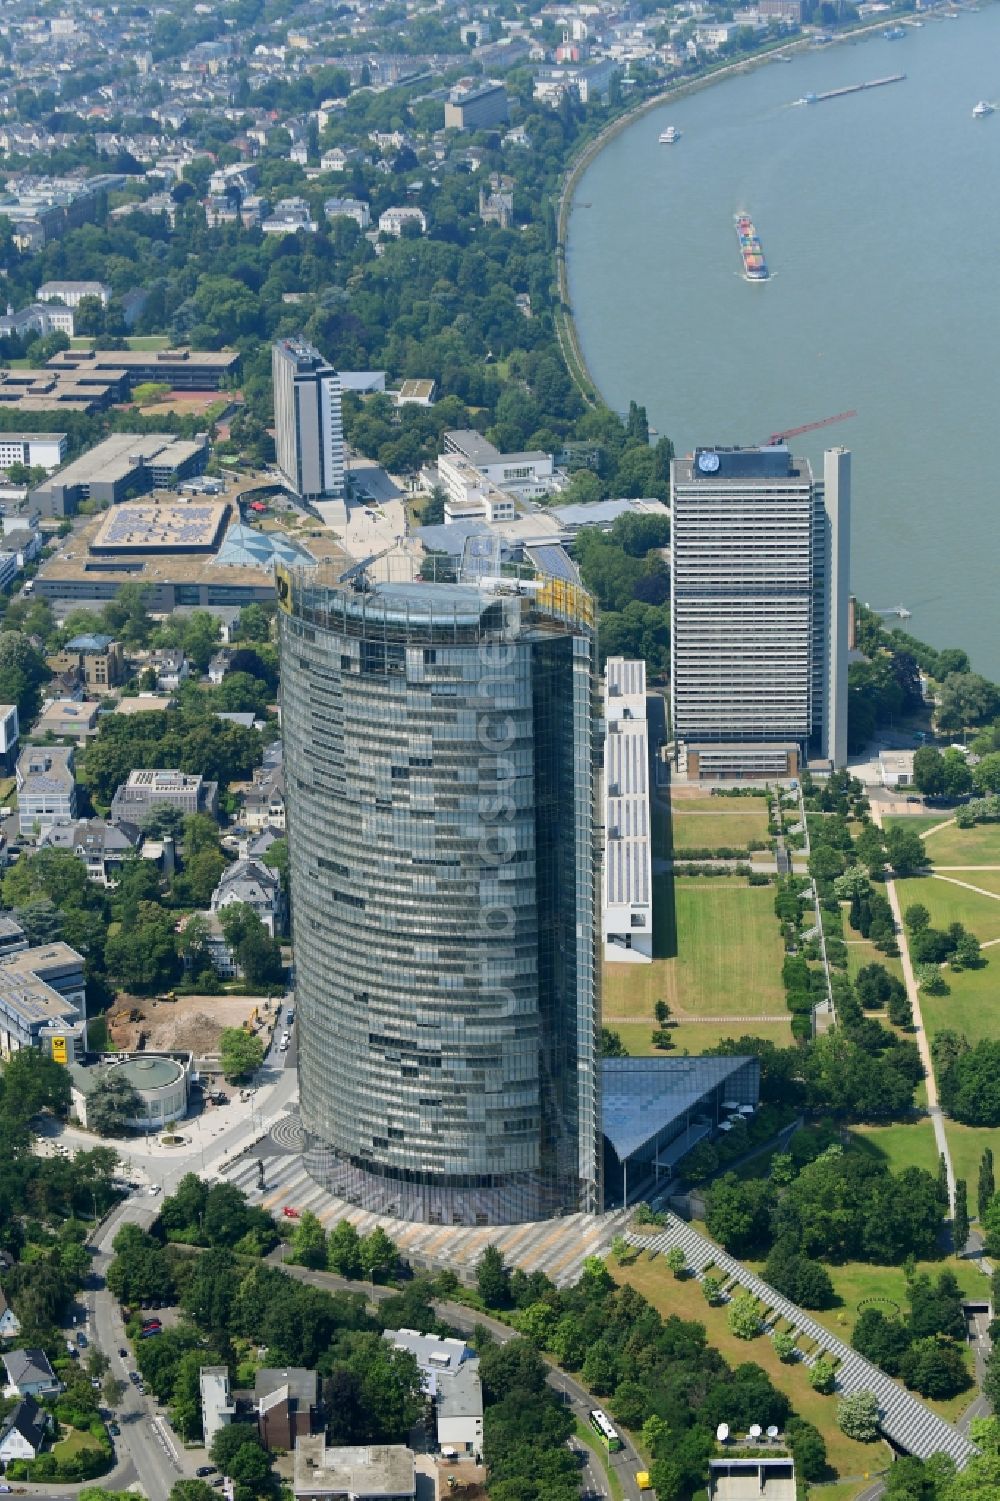 Bonn aus der Vogelperspektive: Büro- und Unternehmensverwaltungs- Hochhaus- Gebäude Post Tower in Bonn im Bundesland Nordrhein-Westfalen, Deutschland